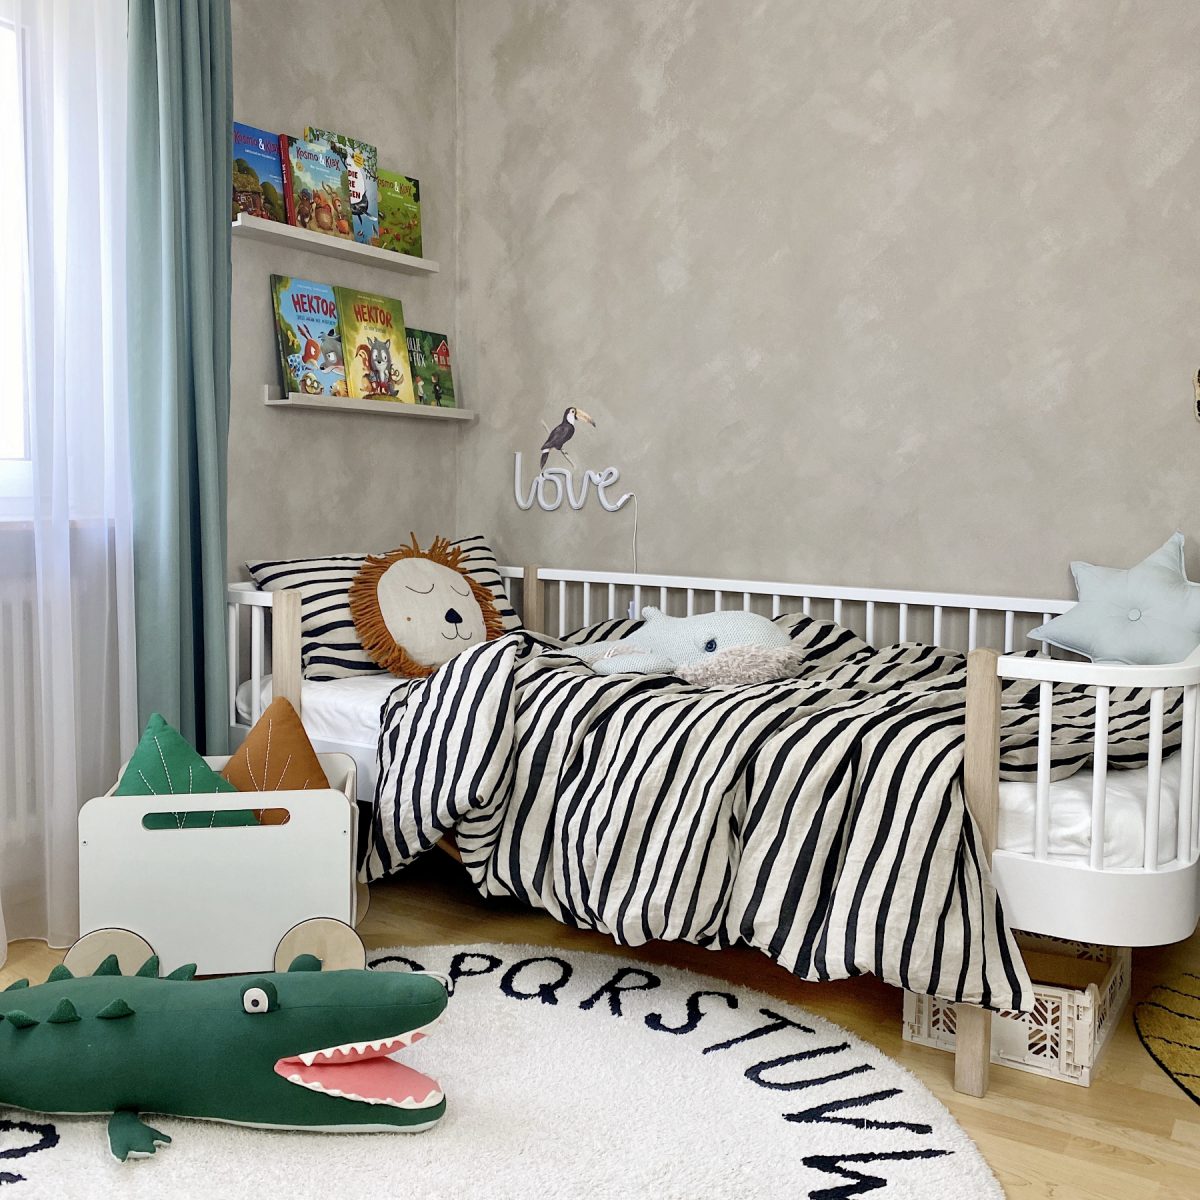 Fantasyroom Blog: Die schönsten Instagram Kinderzimmer - Jungenzimmer mit Tieren